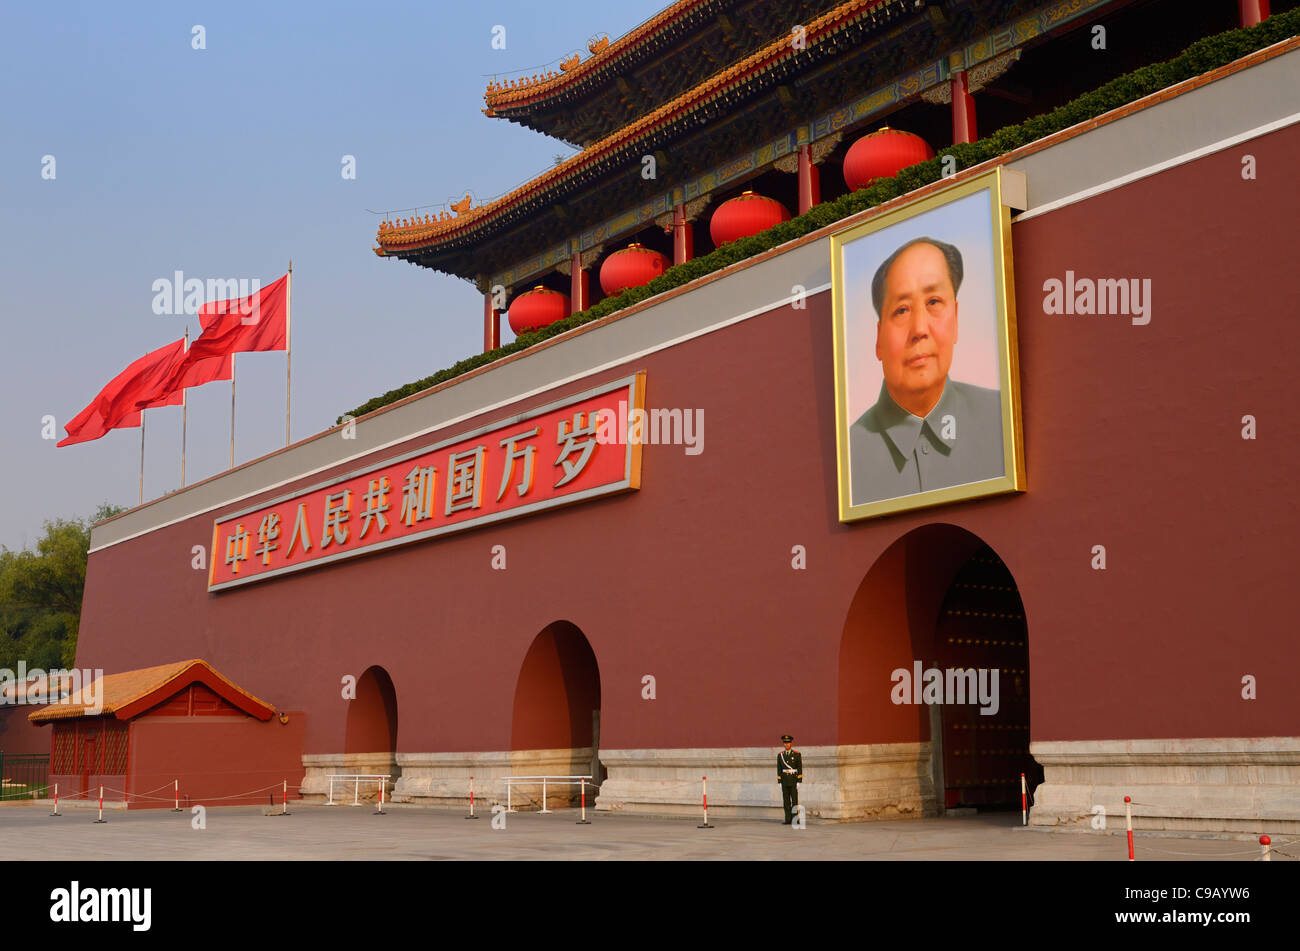 Lone popoli AGENTE DI POLIZIA ARMATO di Tiananmen Porta della Pace Celeste con Mao Zedong ritratto Foto Stock